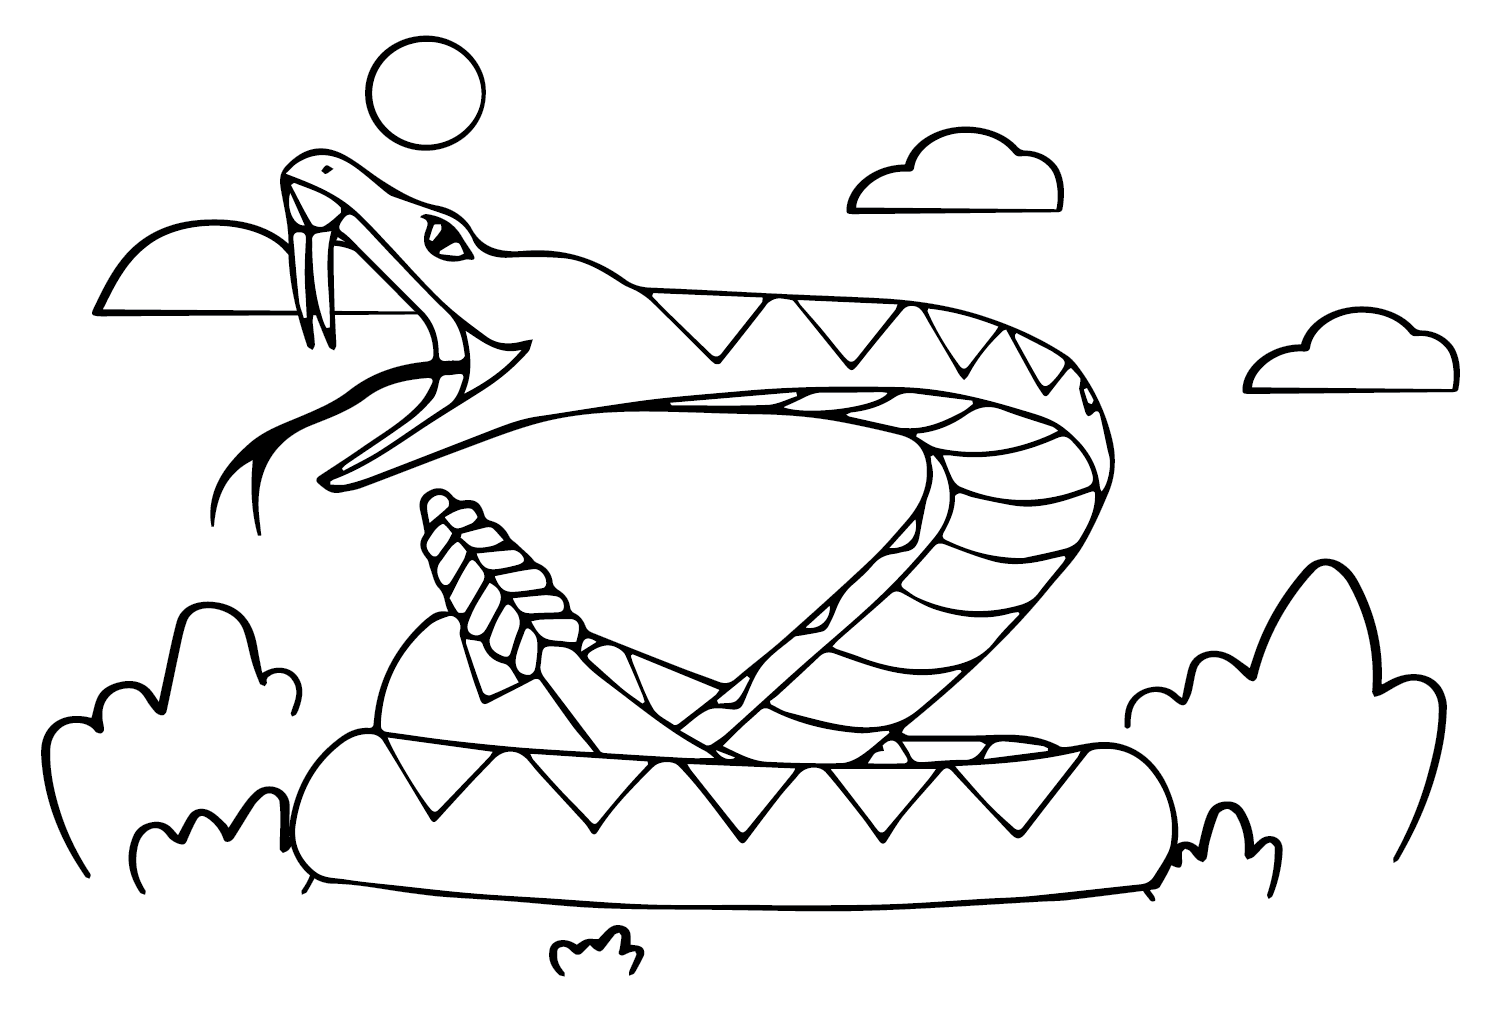 Rattlesnake Coloring Page PDF